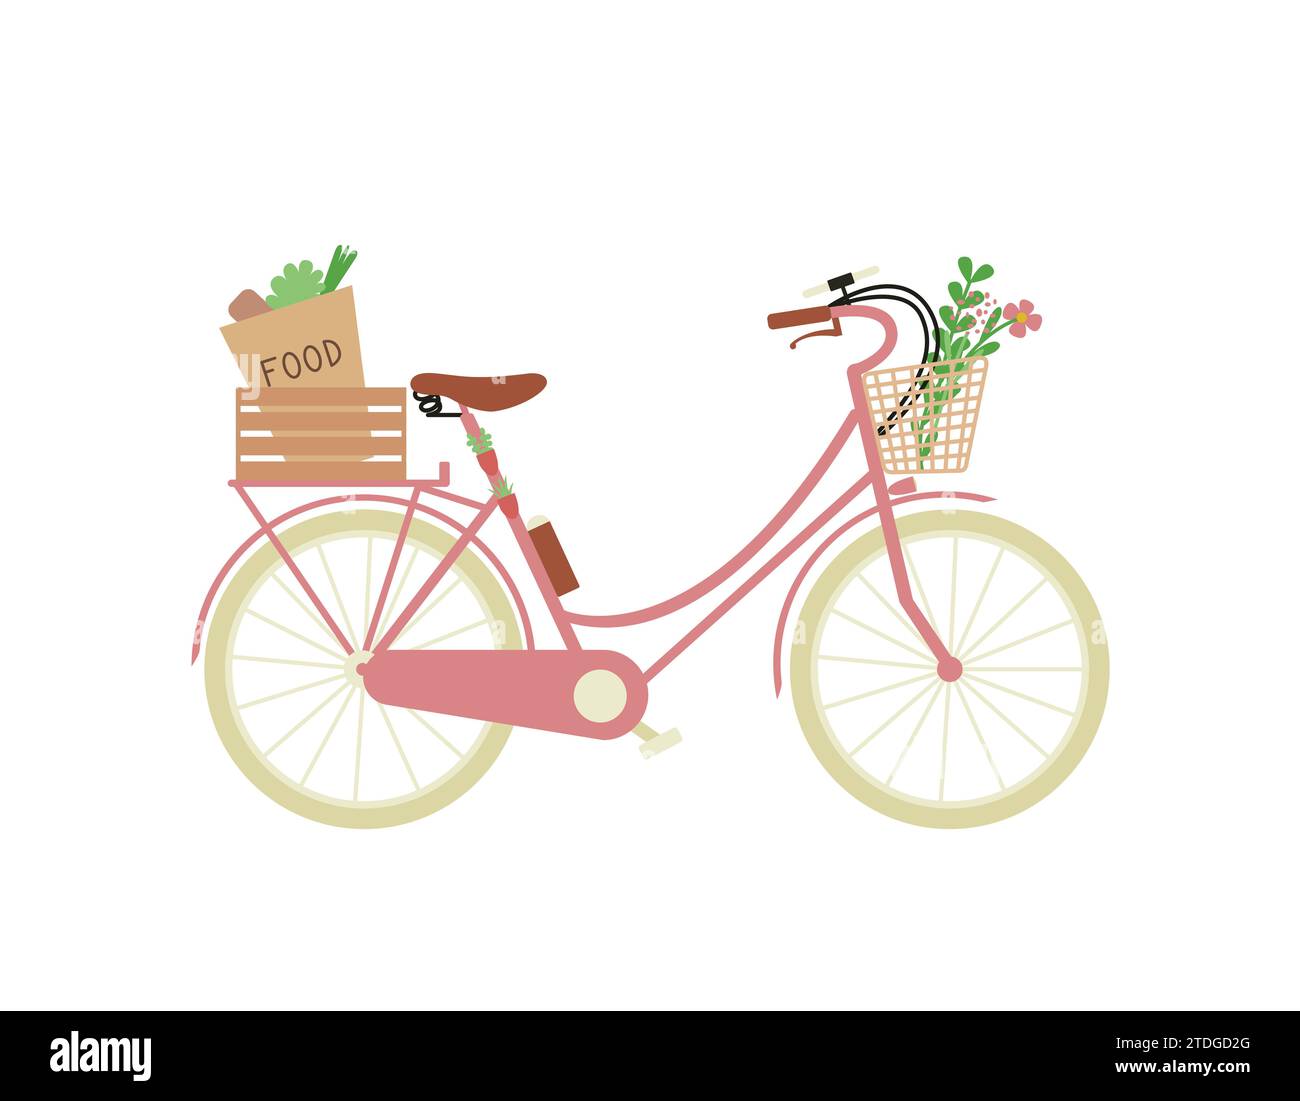 Fahrrad als ökologischer Stadtverkehr mit Einkaufstasche im Korb, Blumenstrauß, Smartphone, Flasche Wasser. Vektor-Zeichentrick-Illustration Stock Vektor